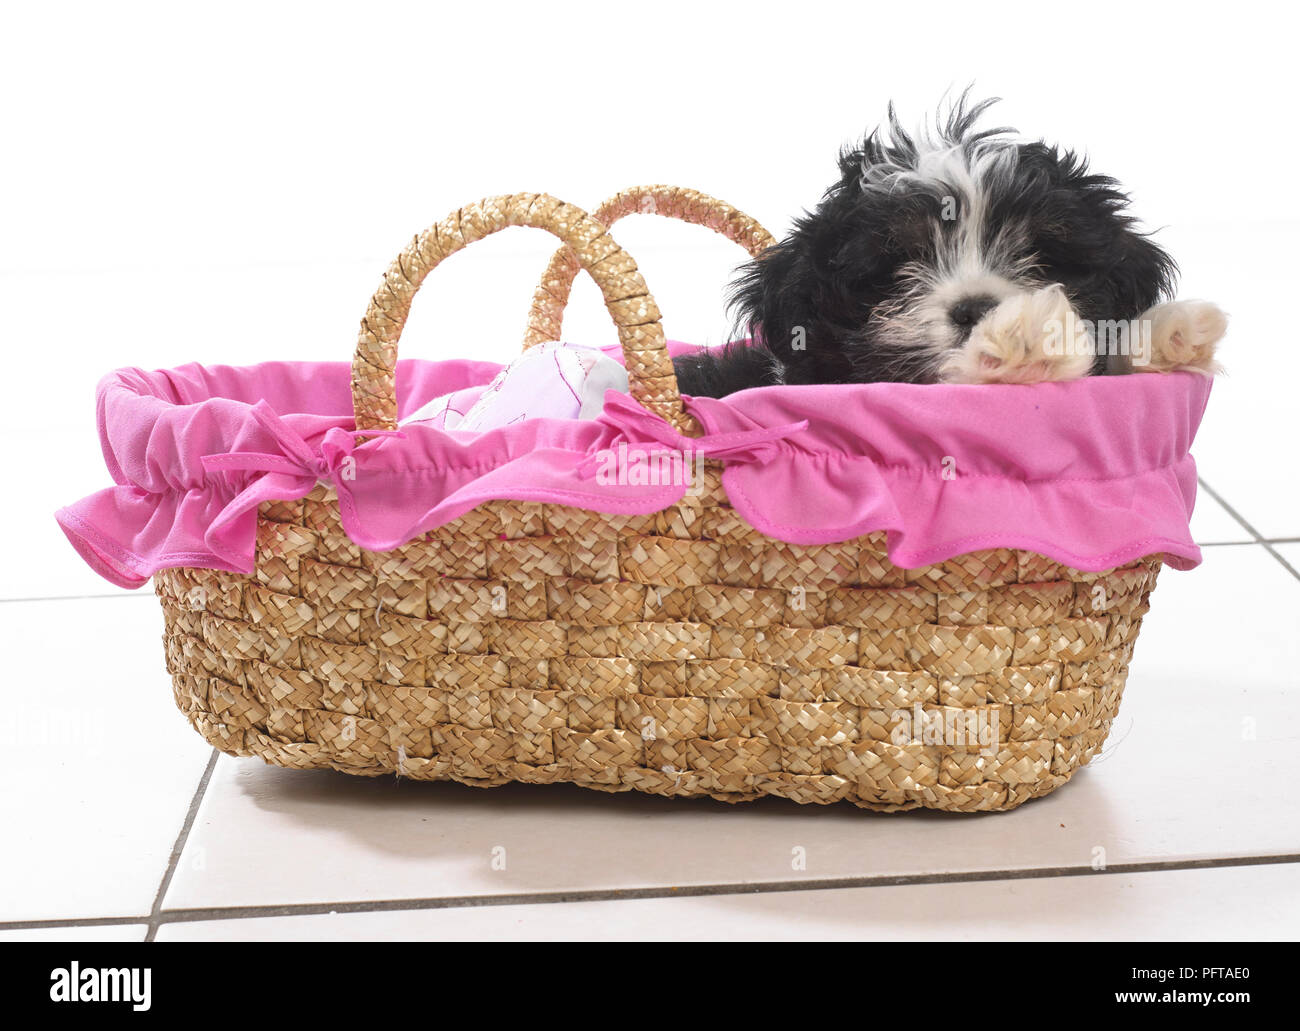 Perrito blanco y negro sentado en rosa cesta de mimbre forradas de tela Foto de stock